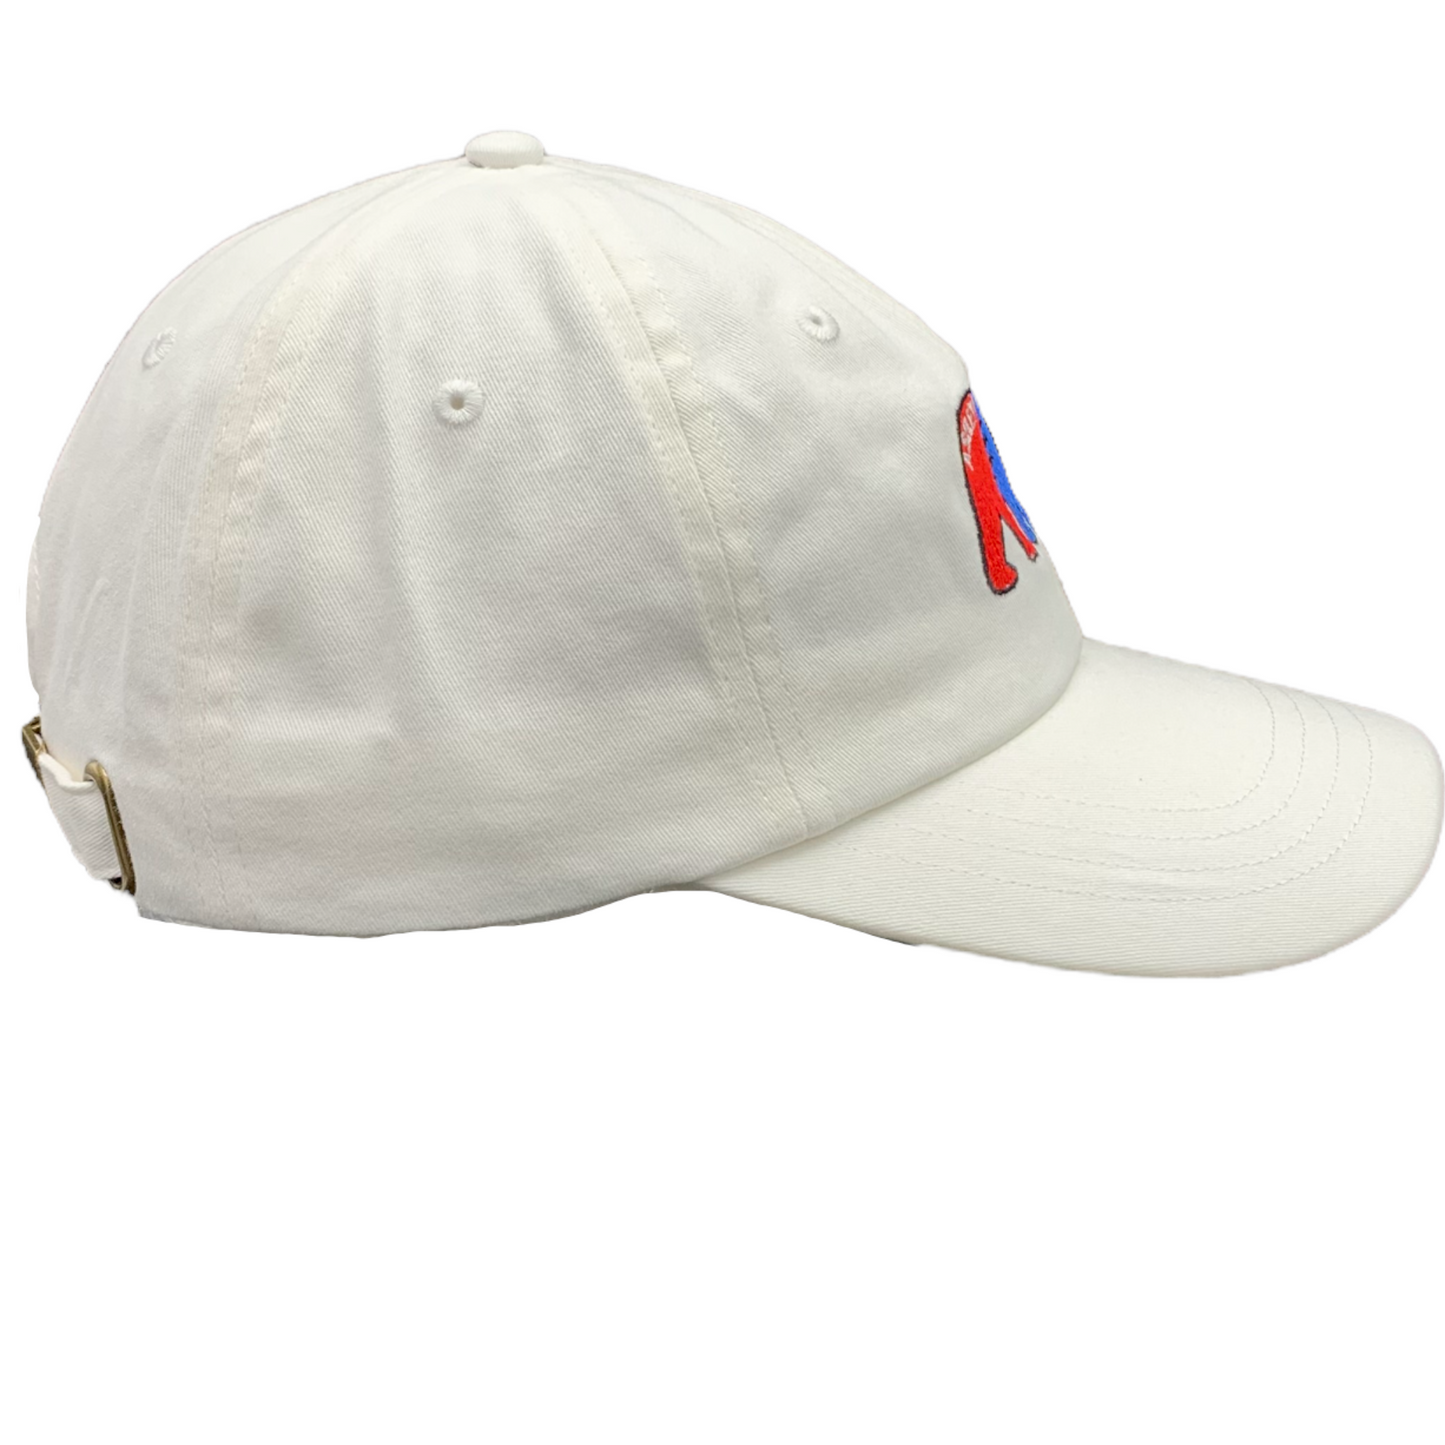 Stanley Bear ASHEVILLE Baseball Hat White - The ASHEVILLE Co. TM